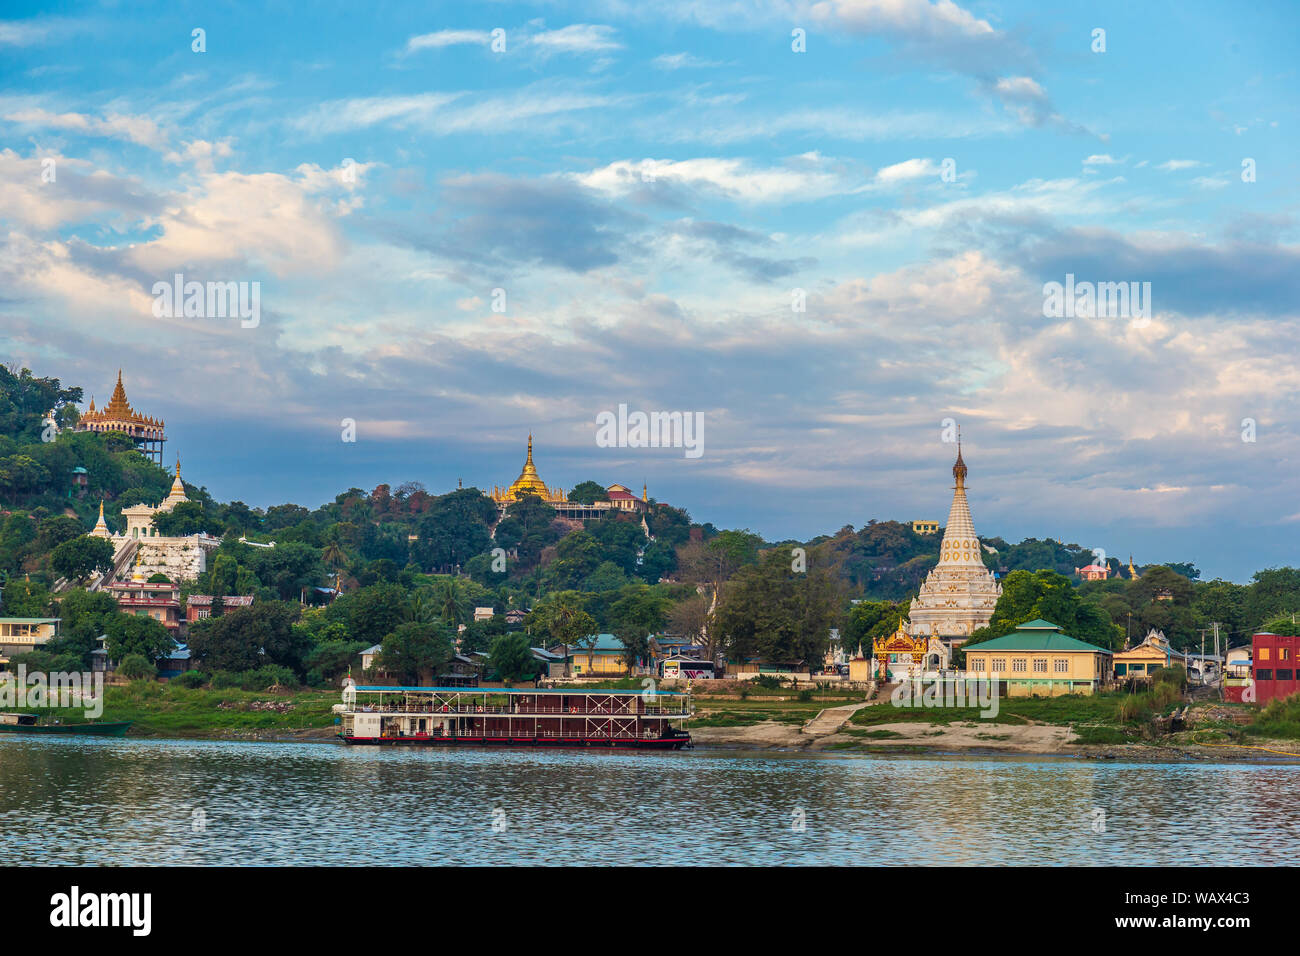 Tolle Aussicht der antiken Architektur mit goldenen Pagoden in Myanmar (Birma) Stockfoto